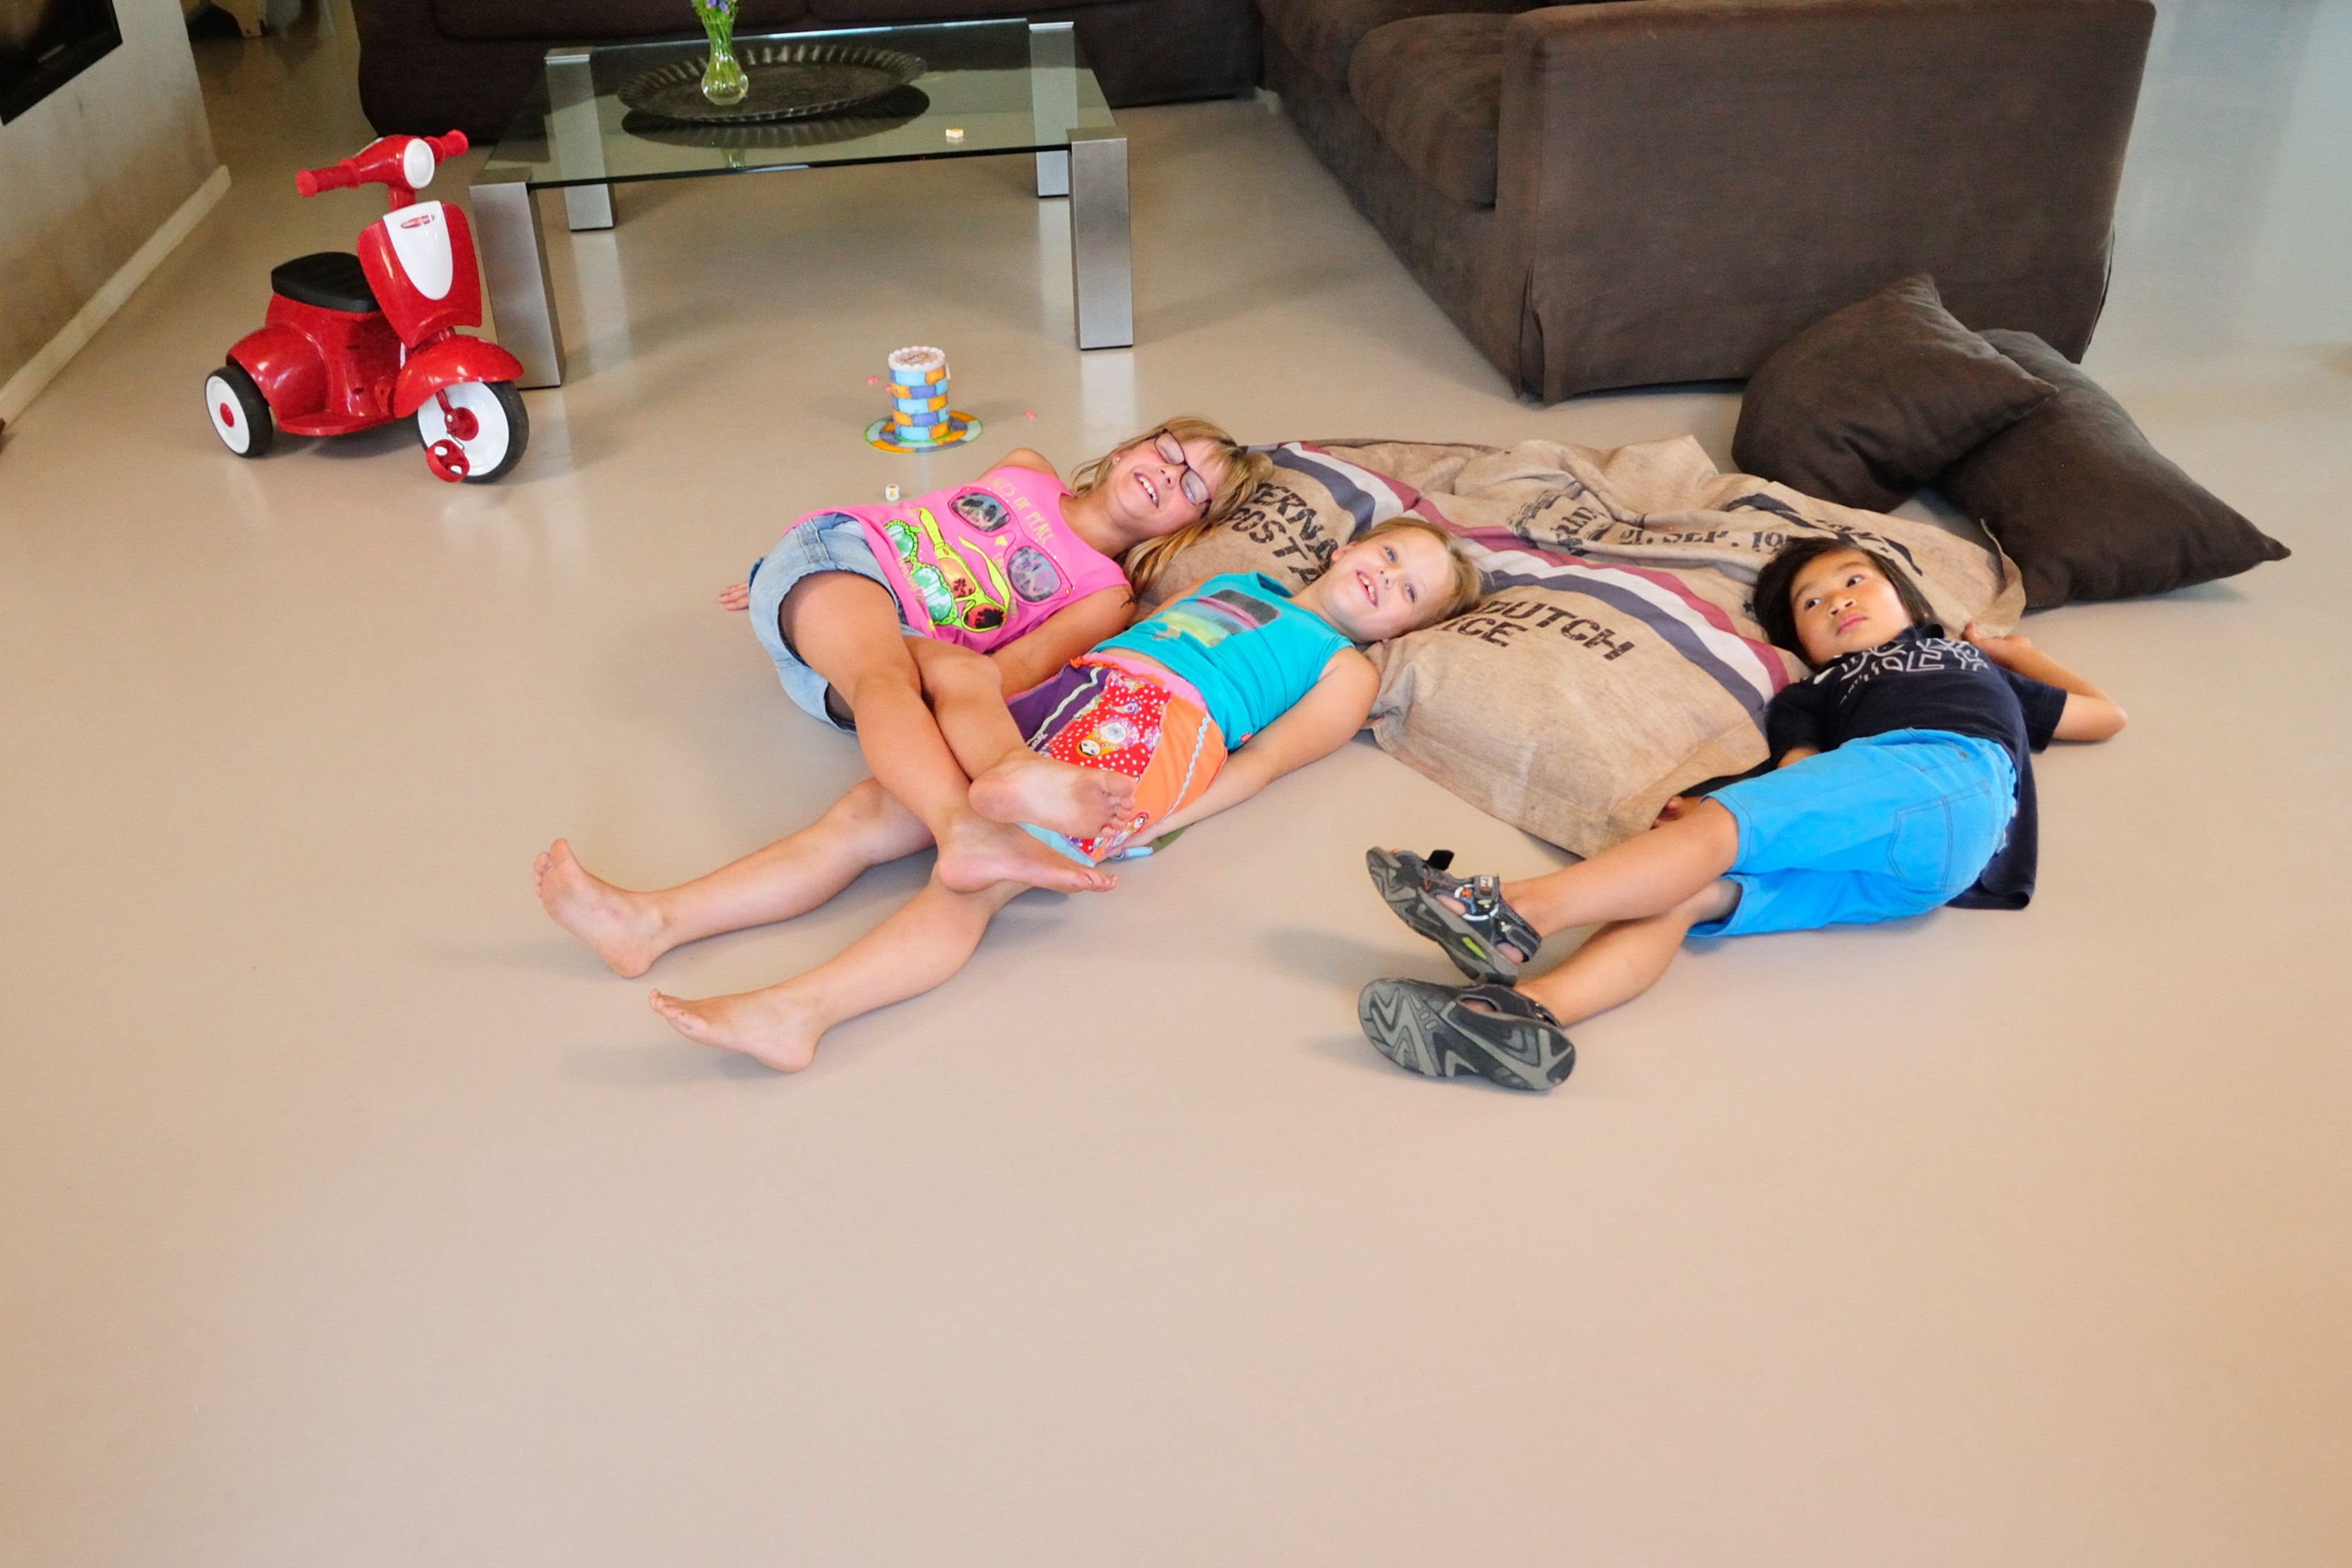 Sika ComfortFloor® beige grey floor with kids laying in living room